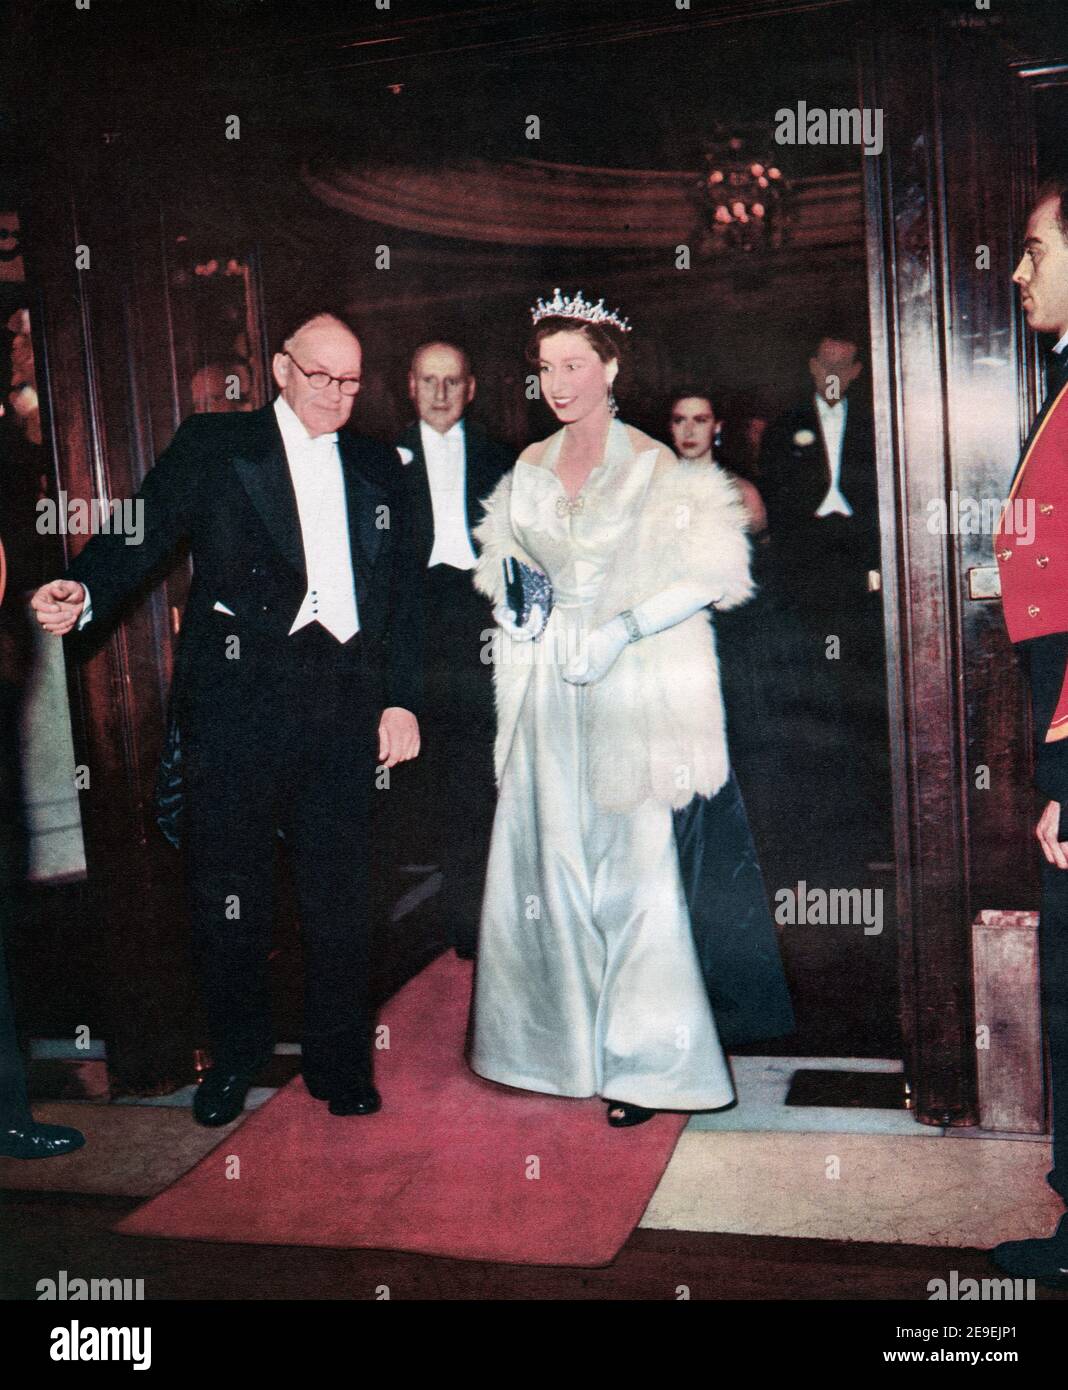 EDITORIAL NUR Elizabeth II. Gesehen hier auf der Royal Film Show im Empire, Leicester Square, London, England, 1952. Elizabeth II., Königin des Vereinigten Königreichs, 1926 - 2022. Aus dem Königin-Elisabeth-Krönungsbuch, veröffentlicht 1953. Stockfoto